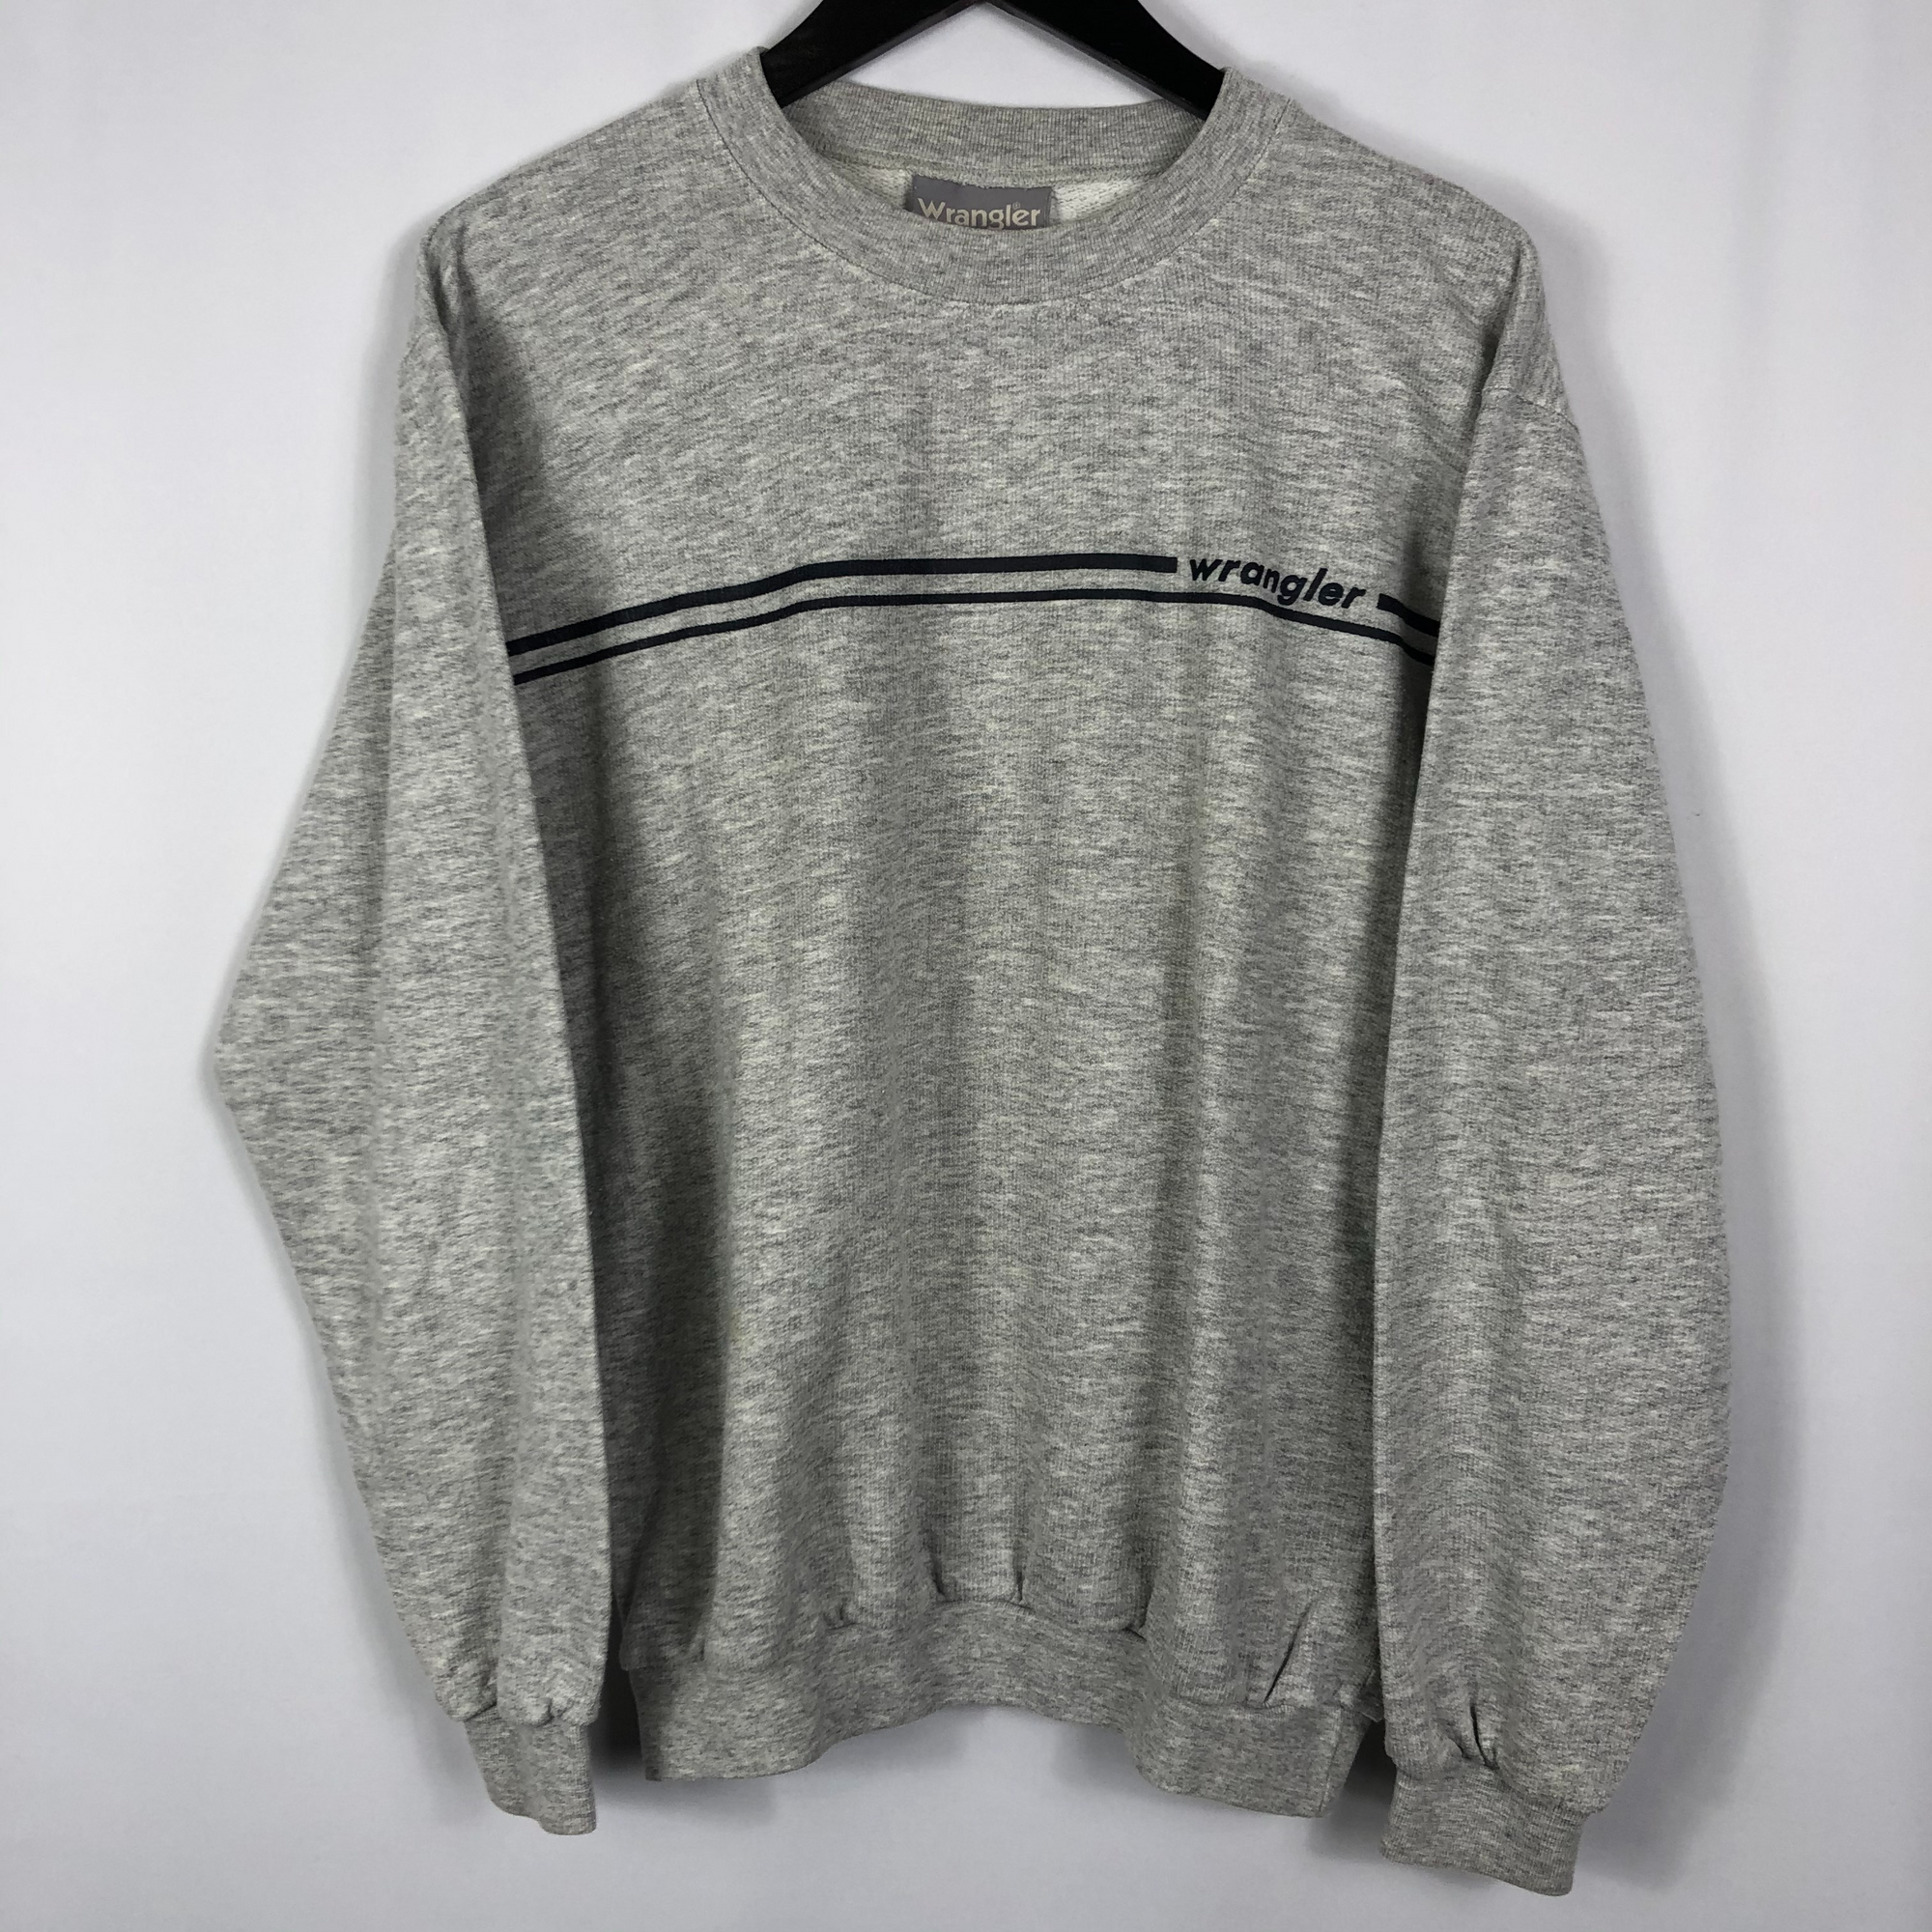 Vintage Wrangler Sweatshirt in Grey - Men's Medium/Women's Large